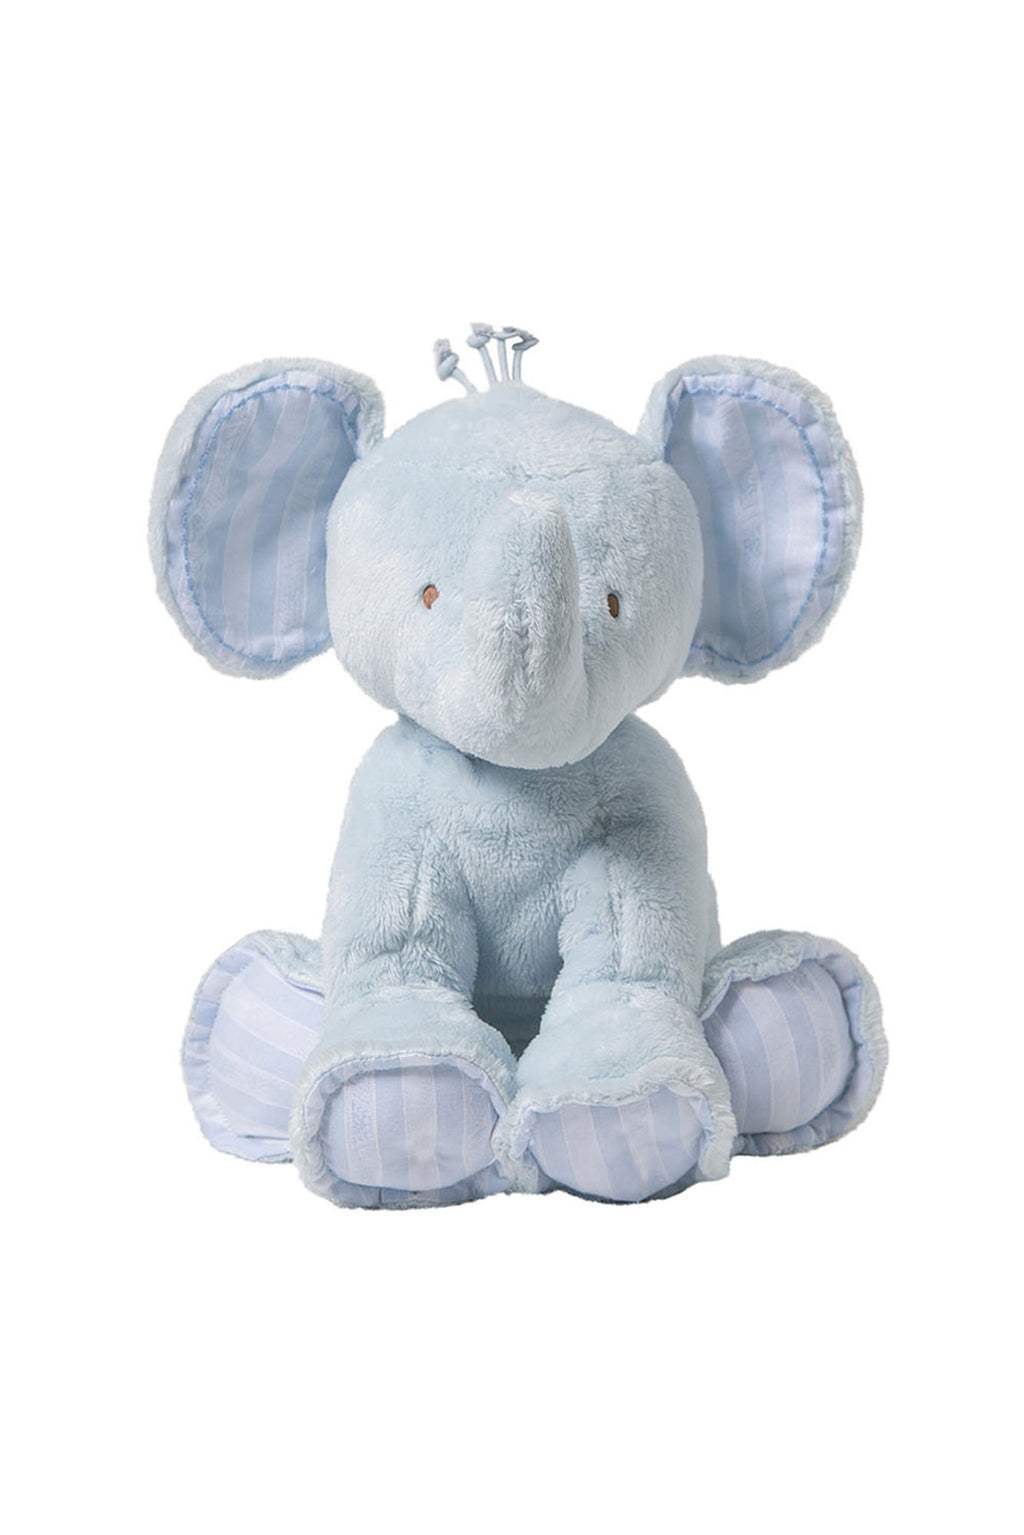 Ferdinand de olifant - 25 cm Licht blauw